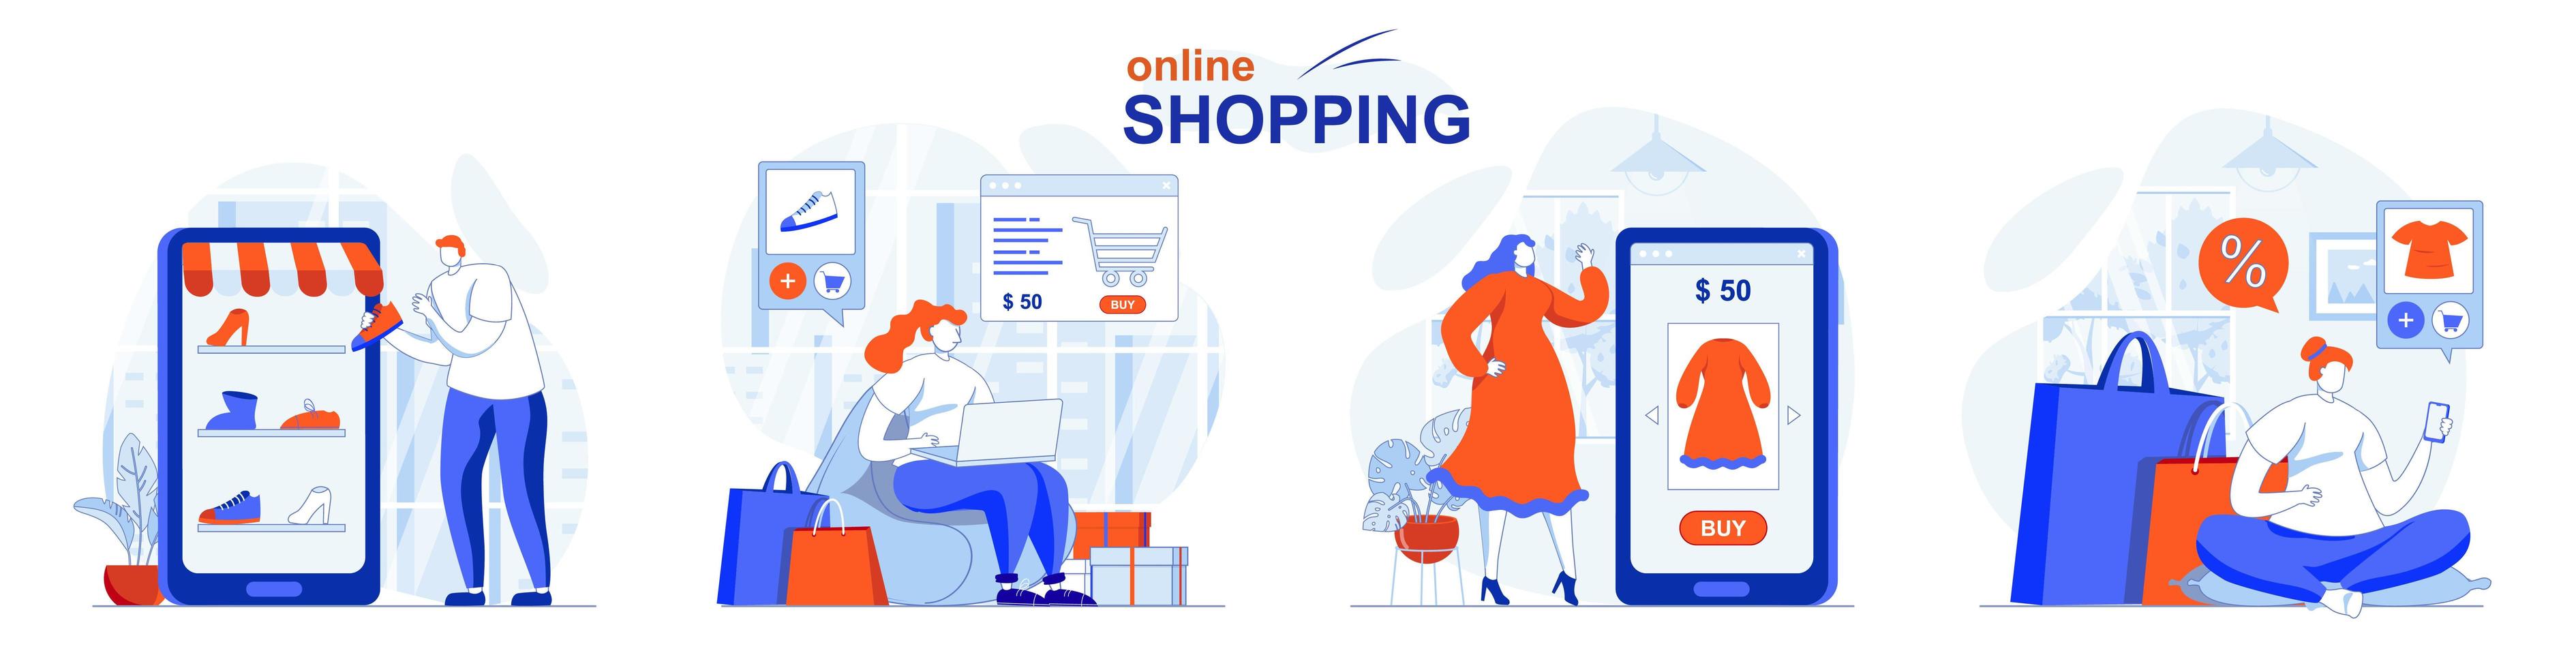 il concetto di shopping online imposta scene isolate di persone in design piatto vettore